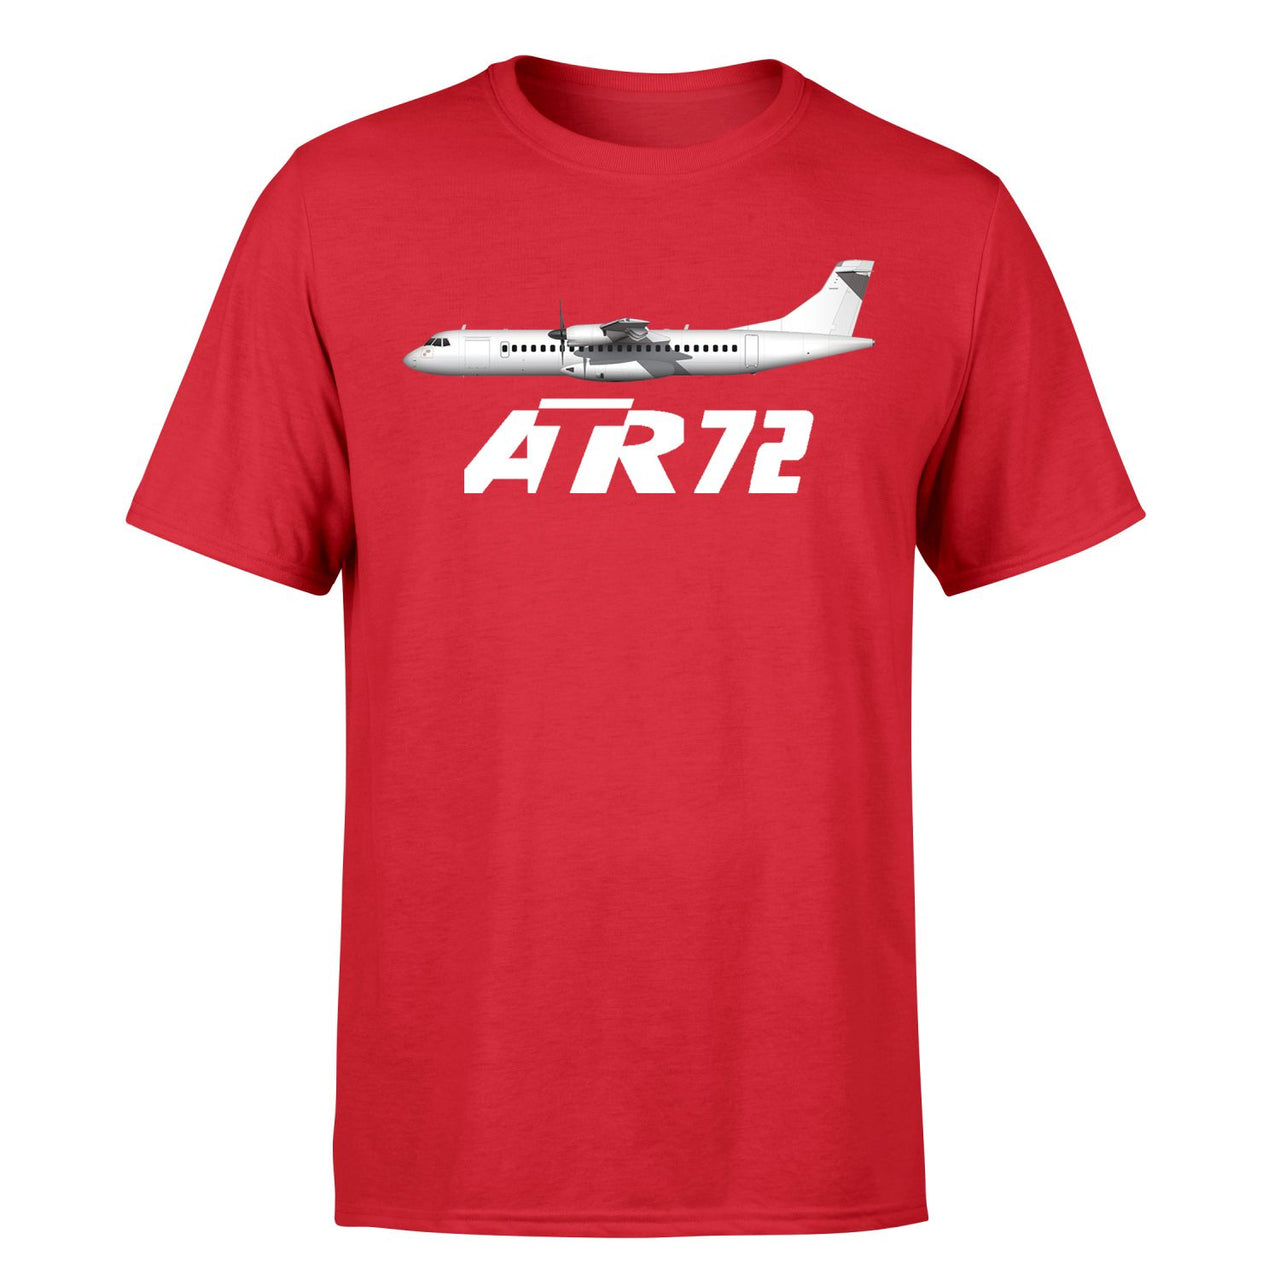 The ATR72 Designed T-Shirts